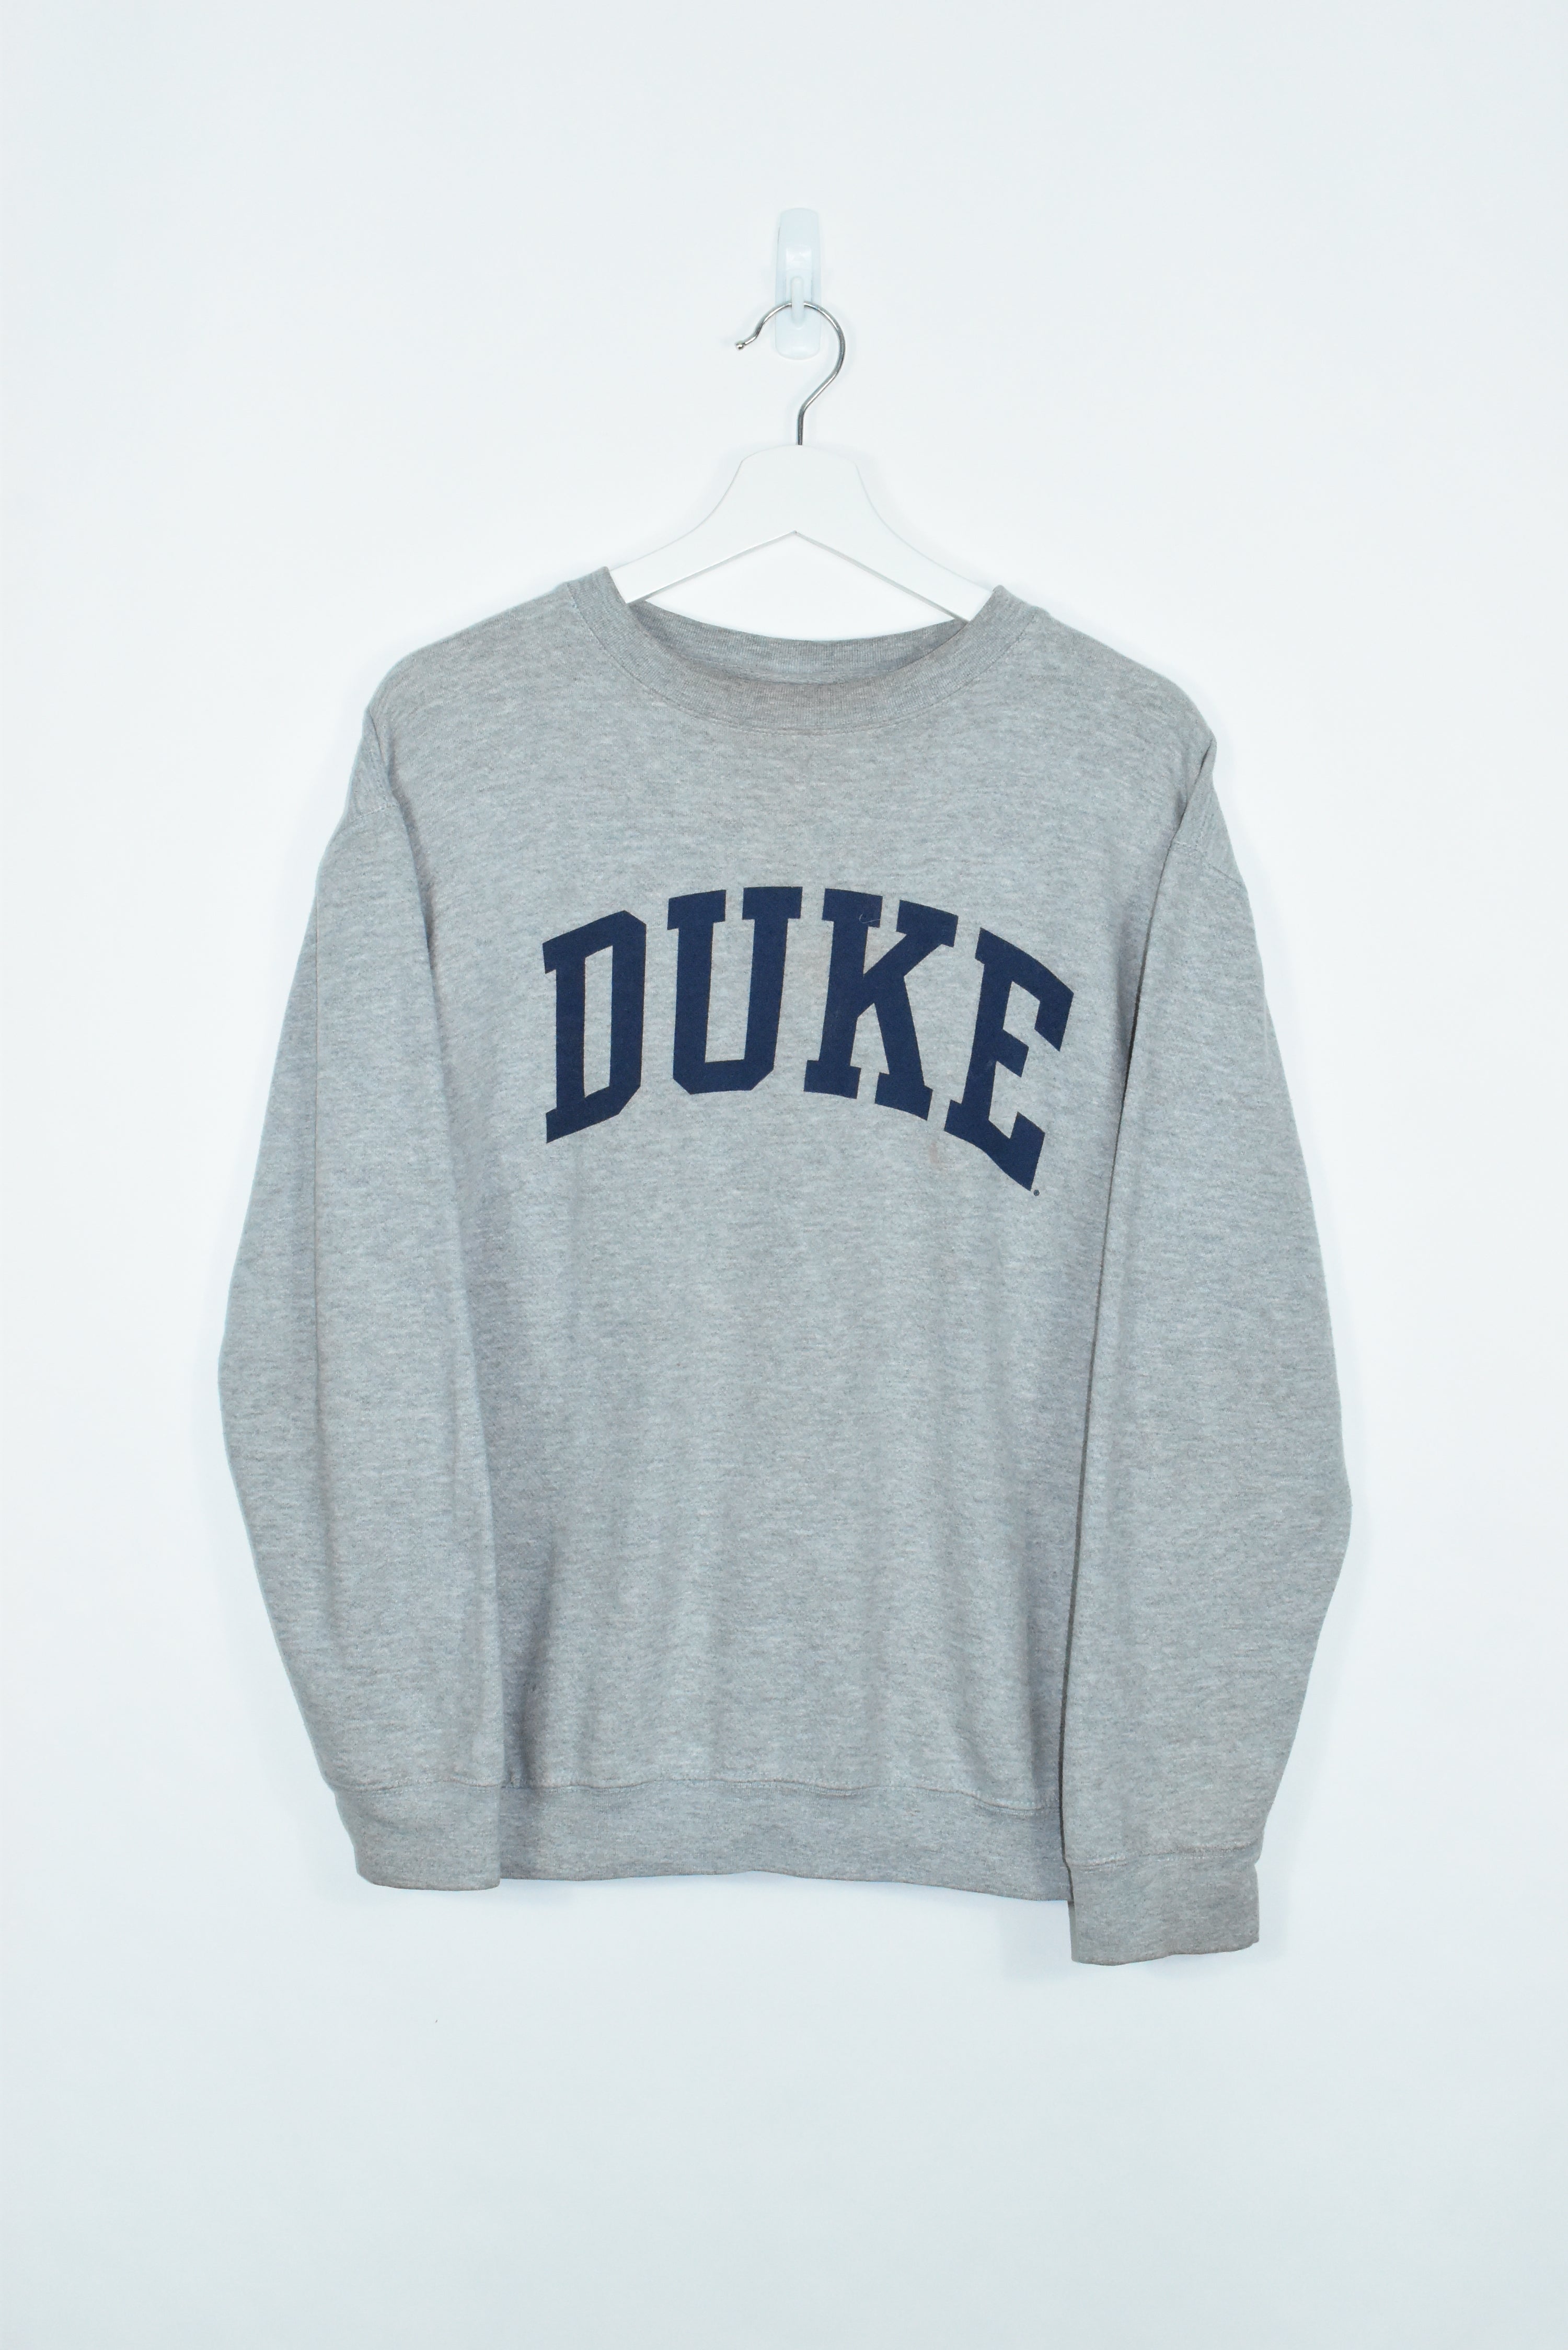 Vintage Duke Spellout Sweatshirt Medium / Large